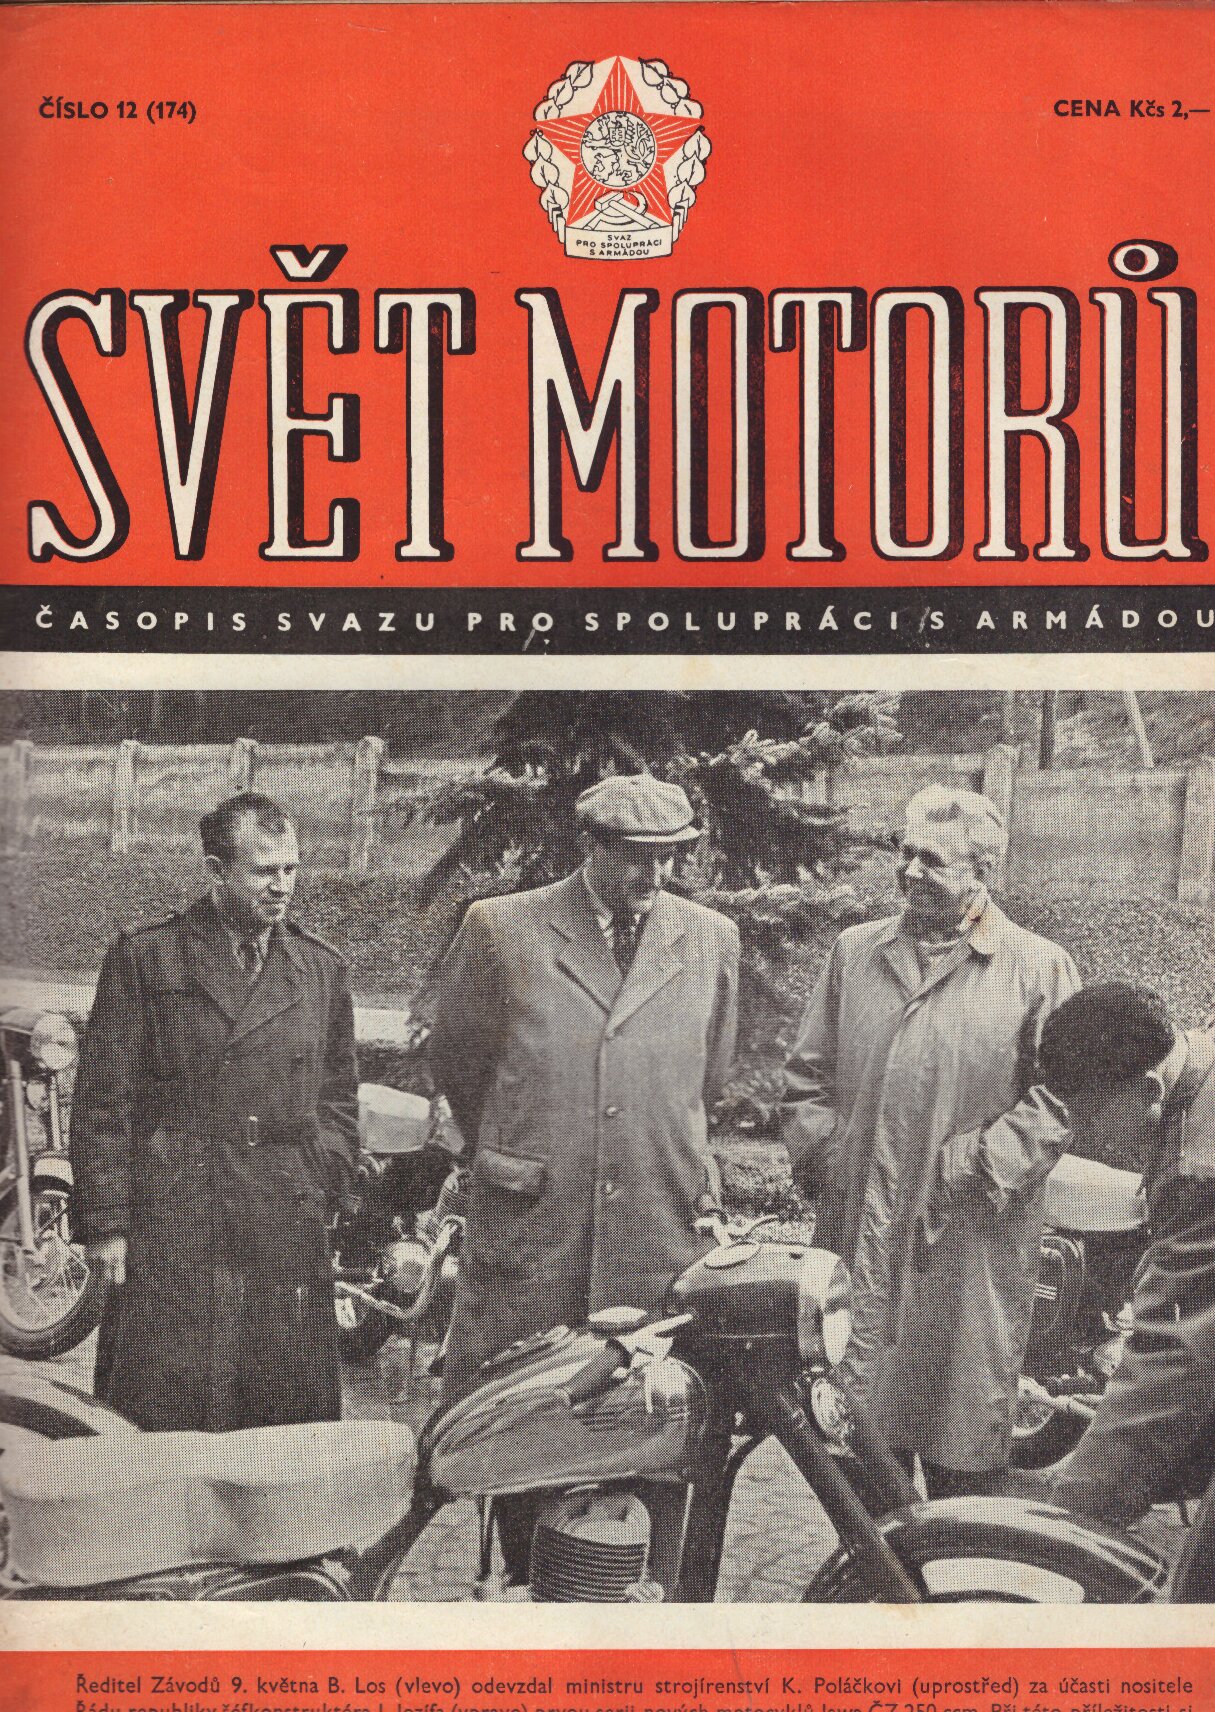 Svět motorů – č. 12 (174) ročník VIII (1954)